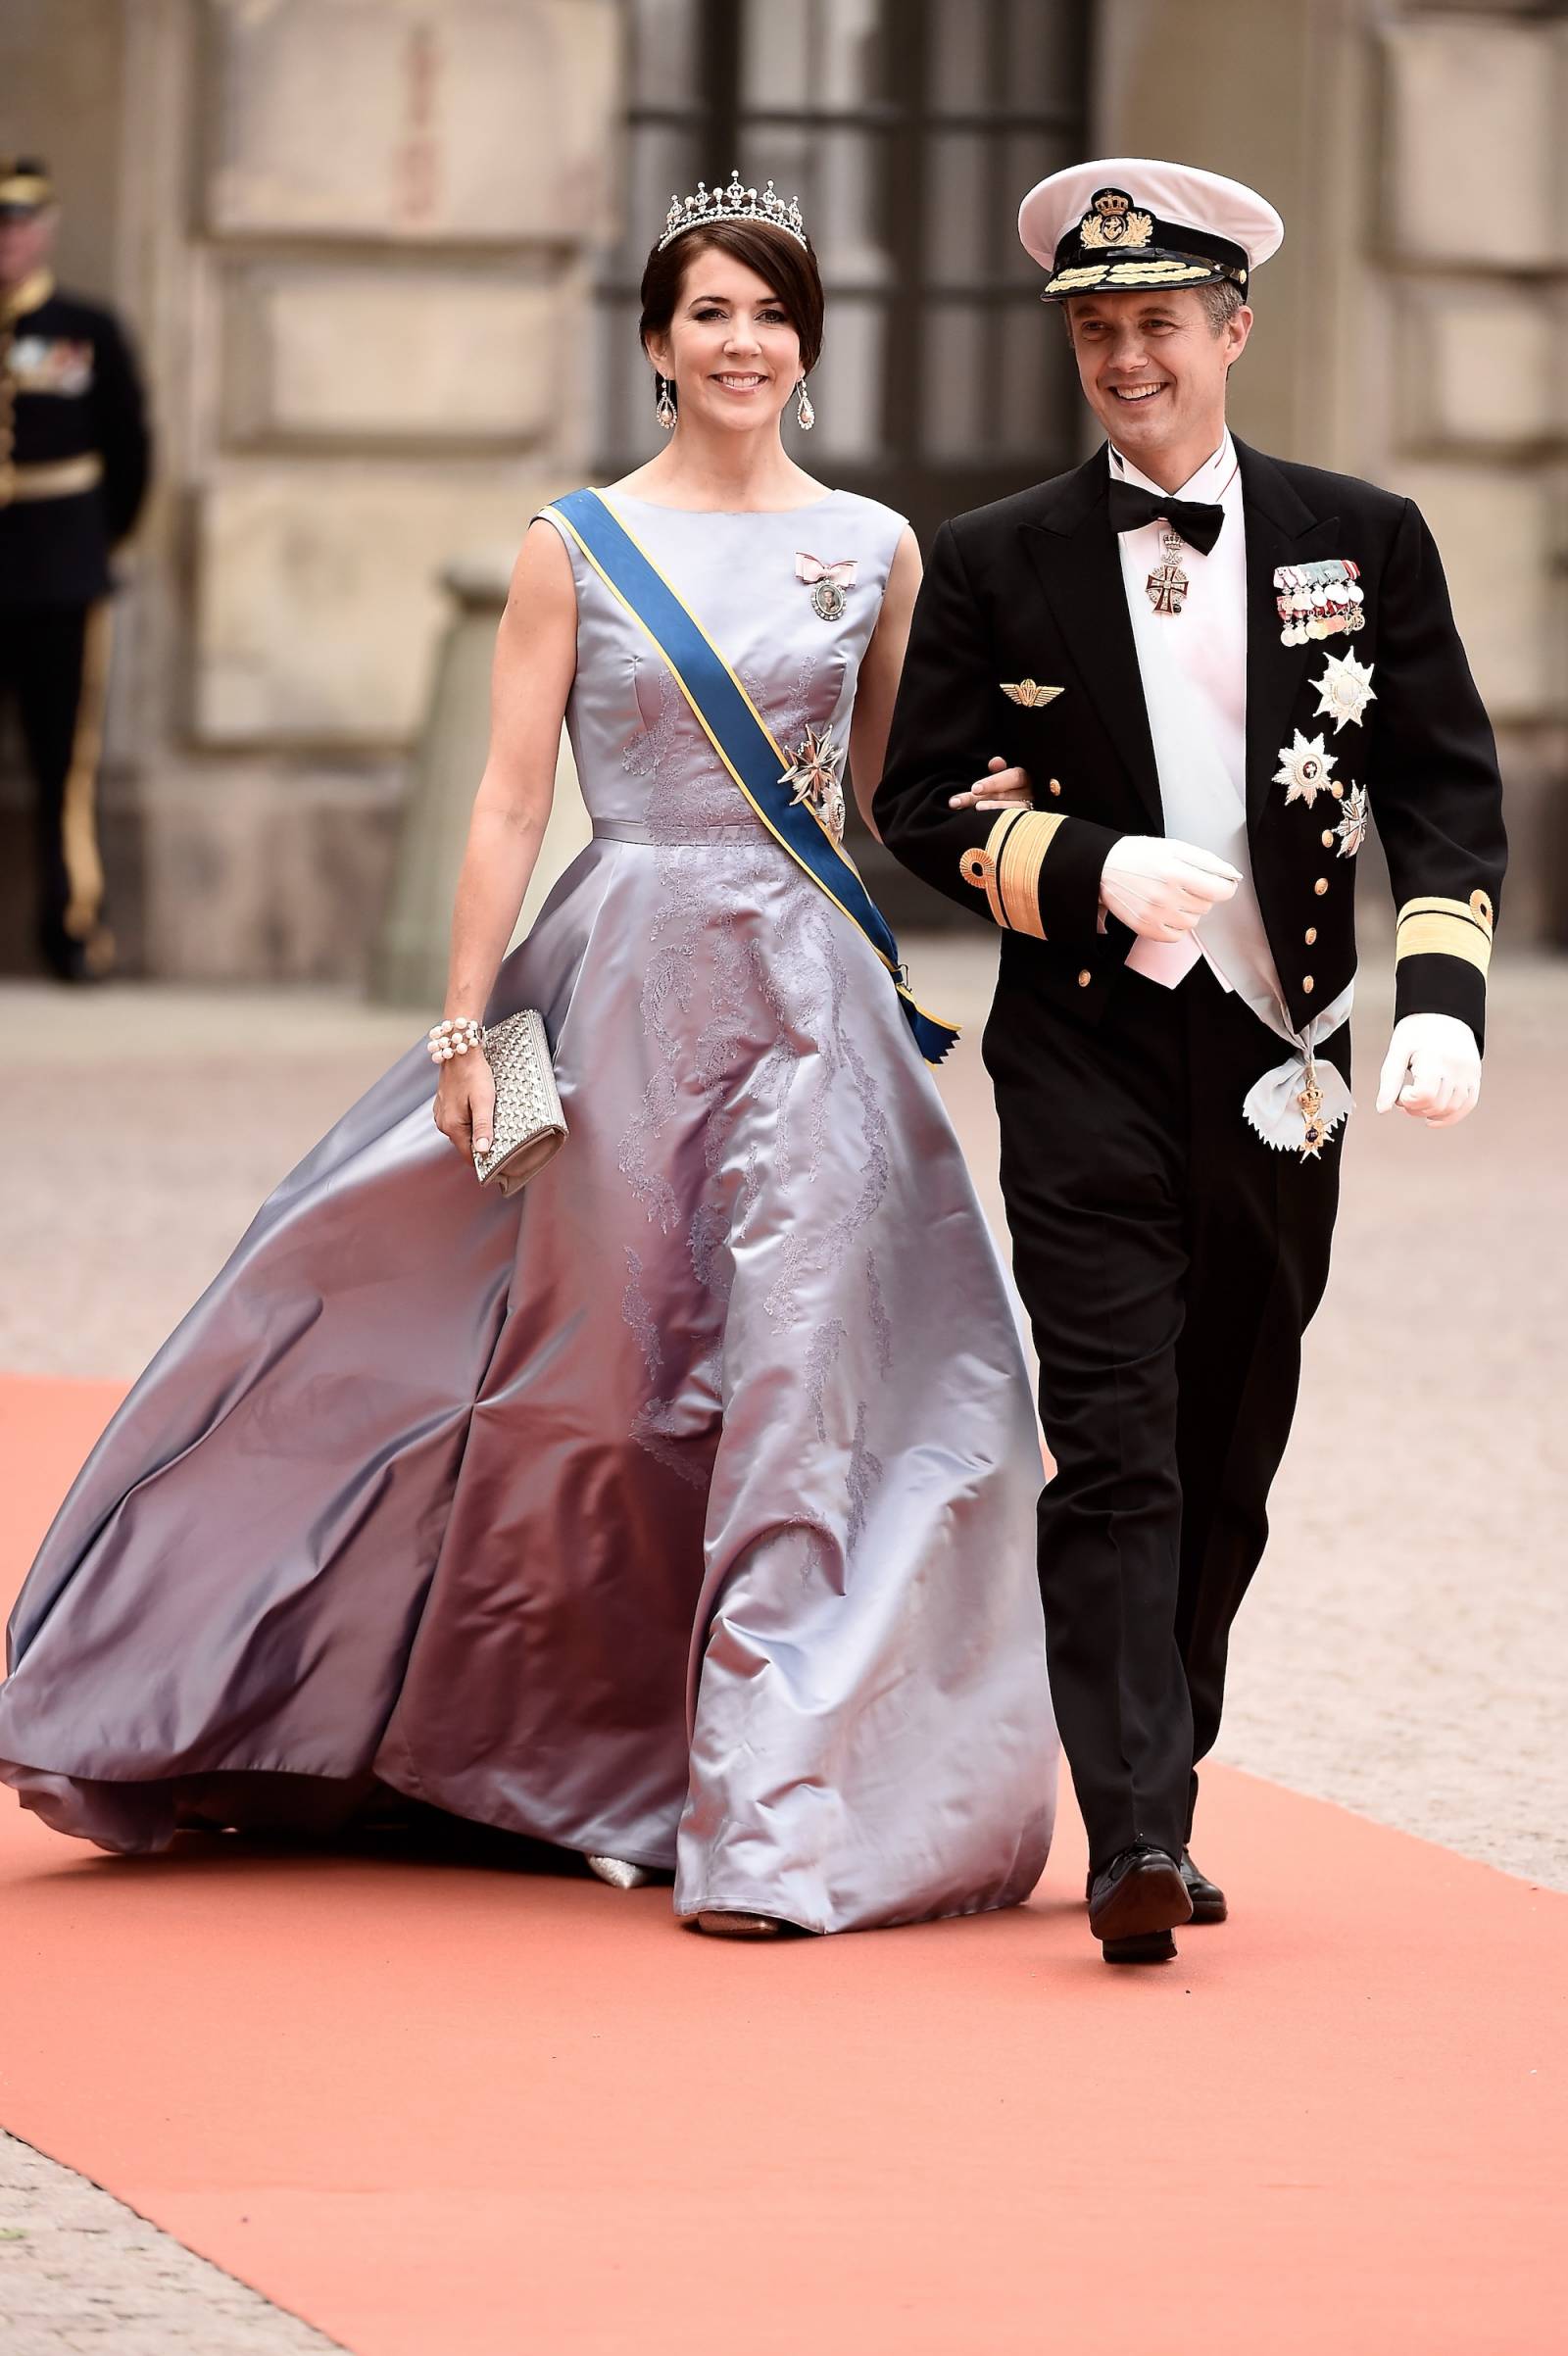 Maria, księżna koronna Danii, 20 lat po ślubie z księciem Fryderykiem zostanie pierwszą urodzoną w Australii europejską królową (Fot. Getty Images)